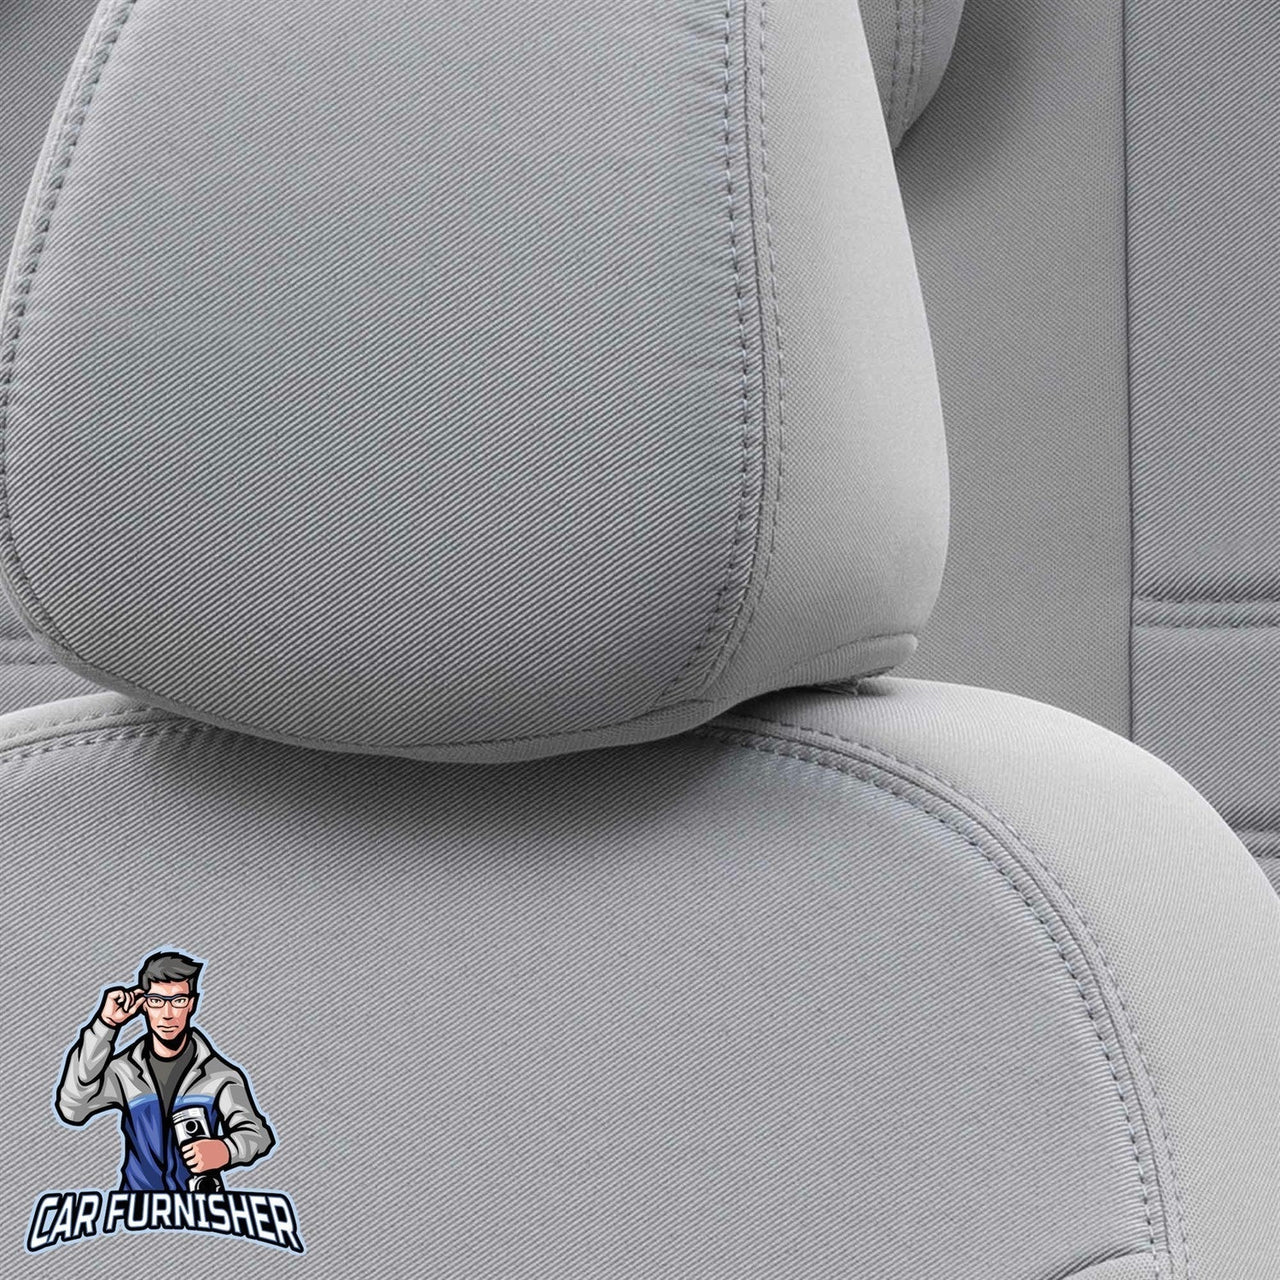 Chevrolet Spark Seat Covers Original Jacquard Design Light Gray Jacquard Fabric